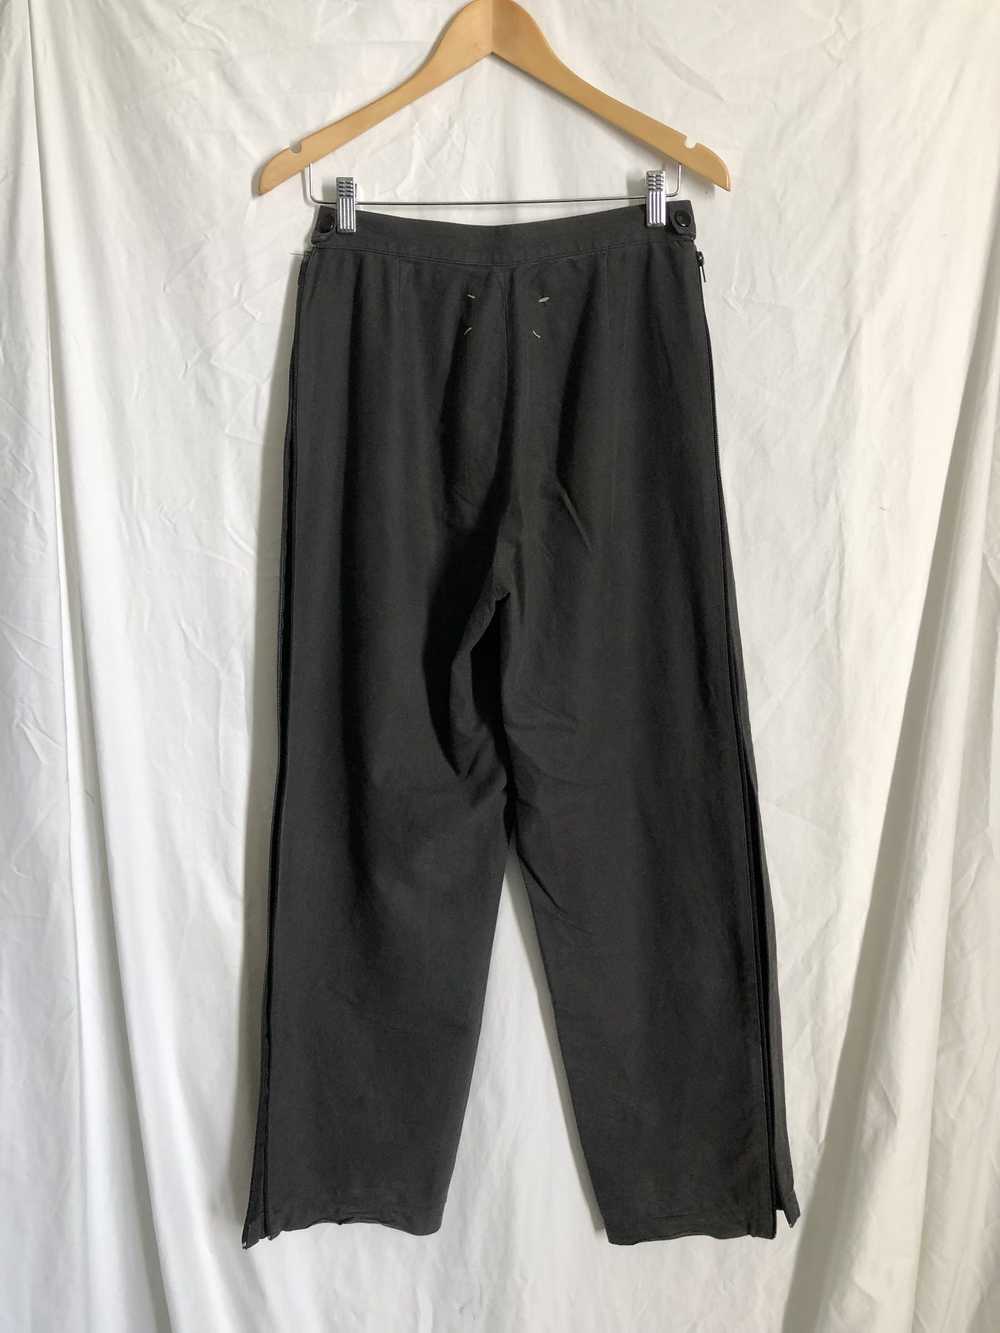 Maison Margiela SS96 wide zip pants - image 3